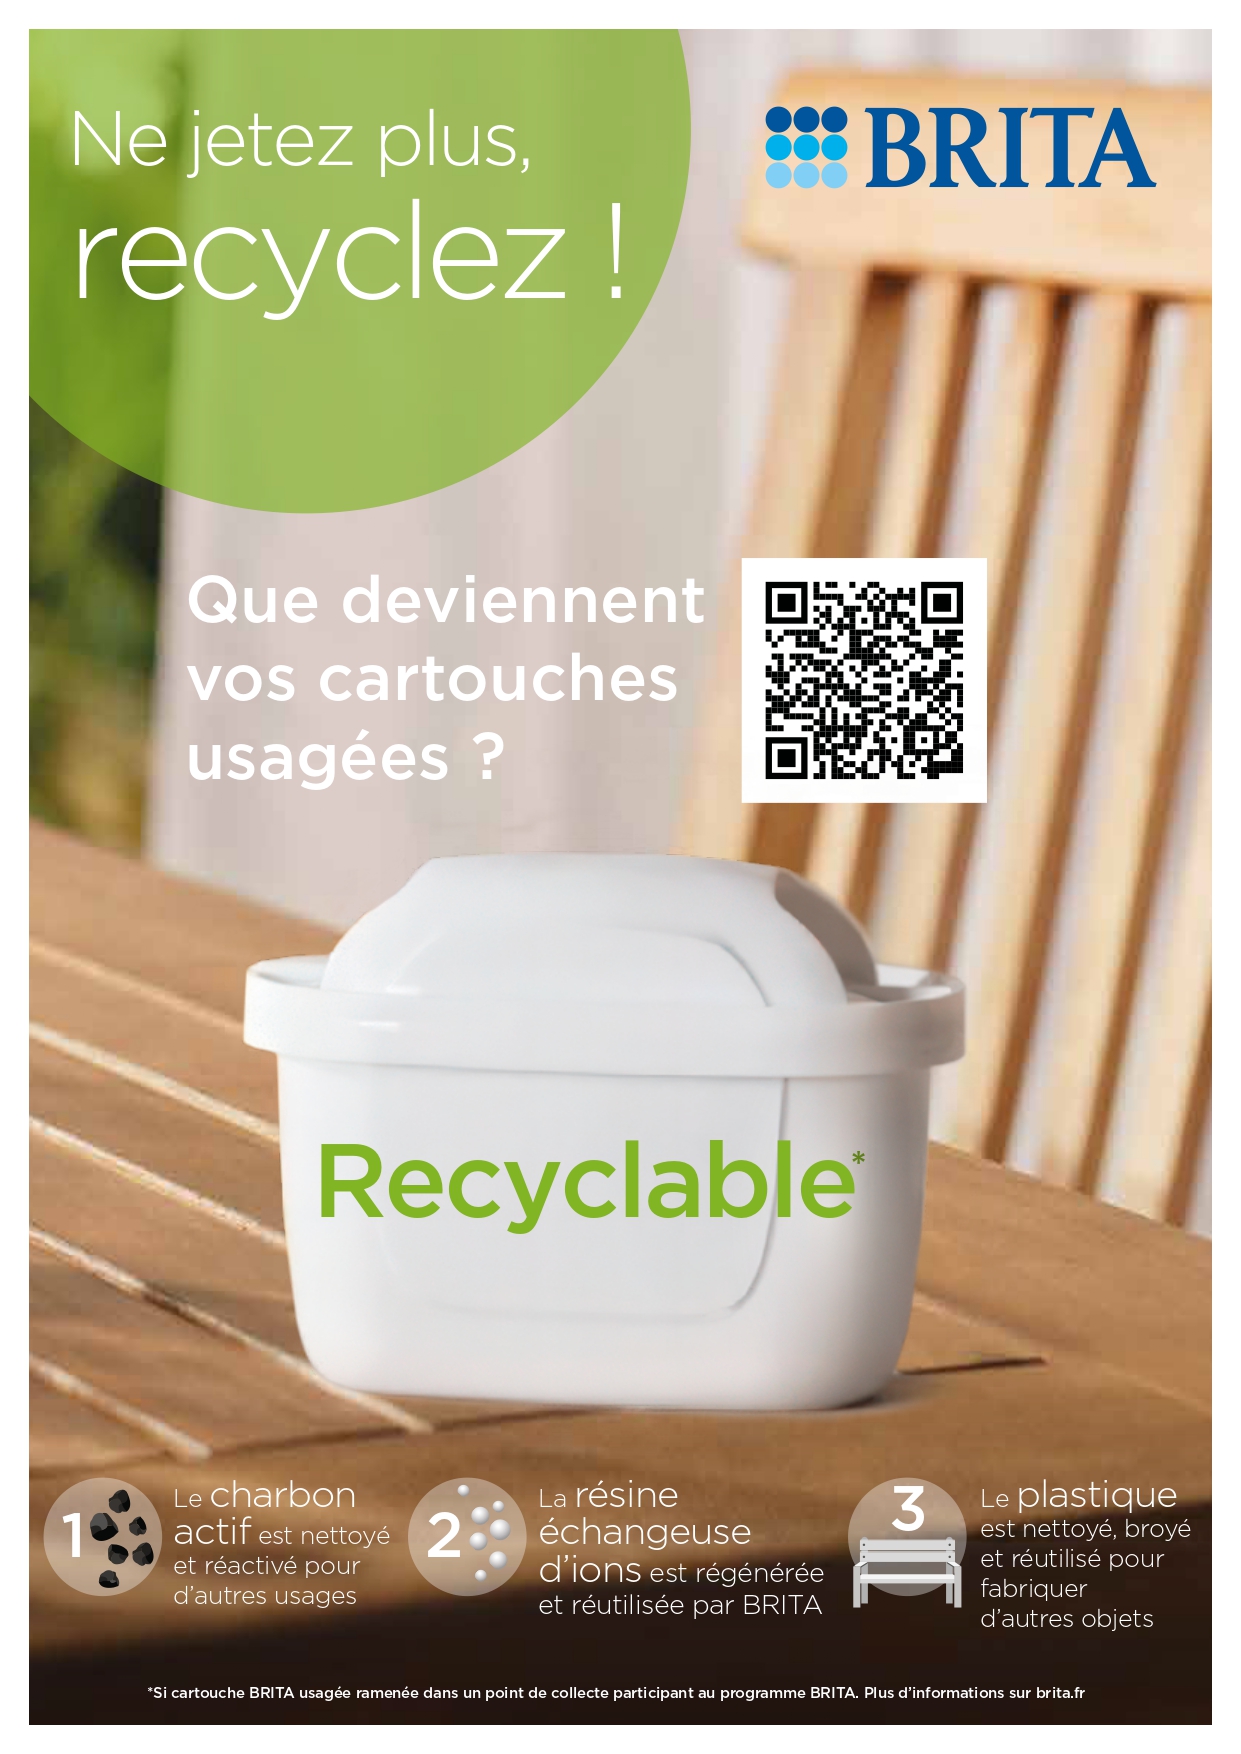 Yvelines : êtes-vous prêts à composter vos déchets au 1er janvier